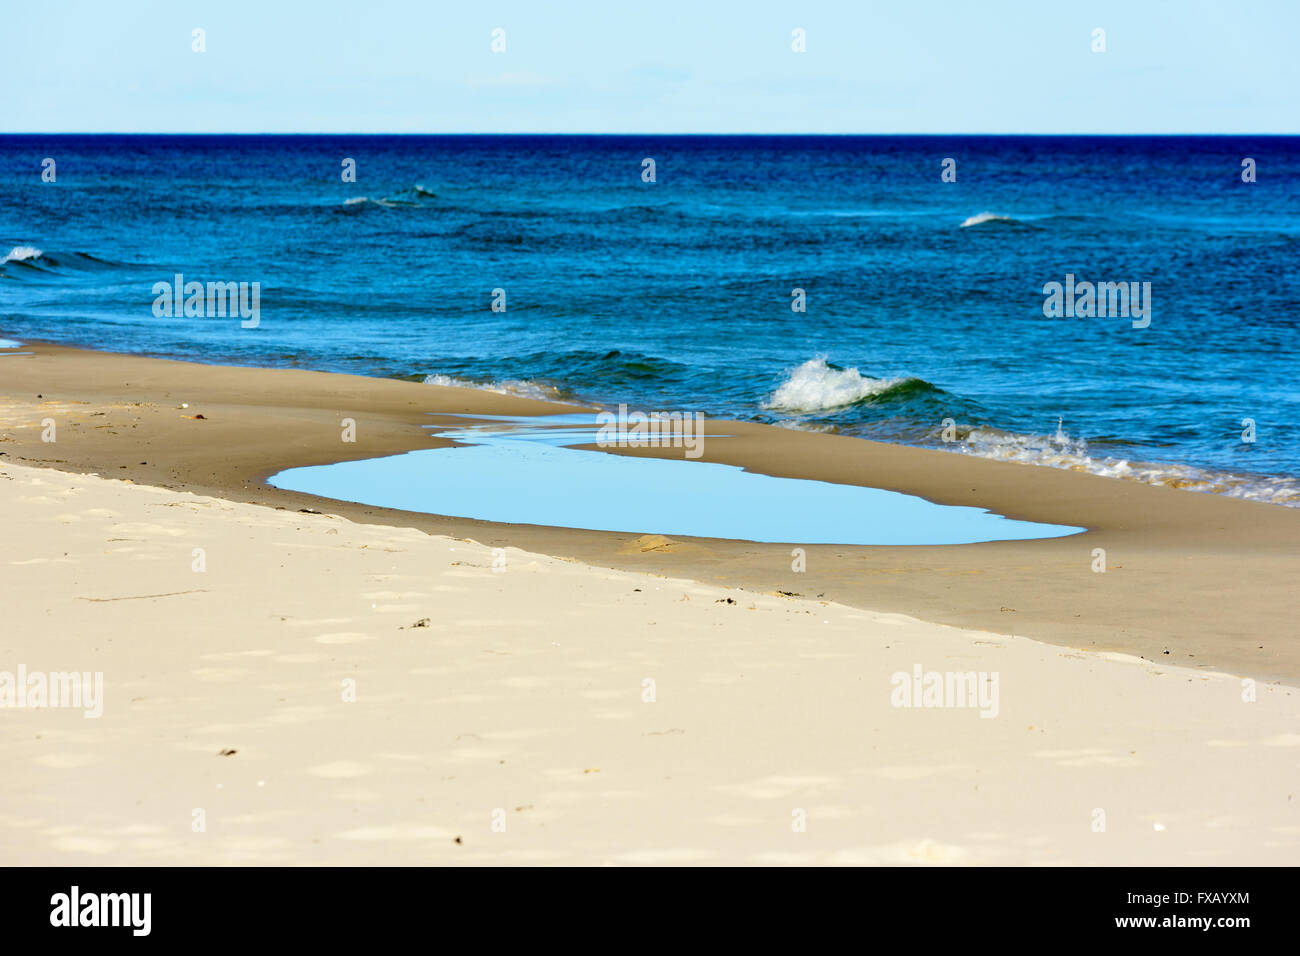 Pozza d'acqua di mare poco profondo sulla spiaggia sabbiosa con il mare aperto in background. Piccole onde alimentare la pozzanghera con nuova acqua. Foto Stock